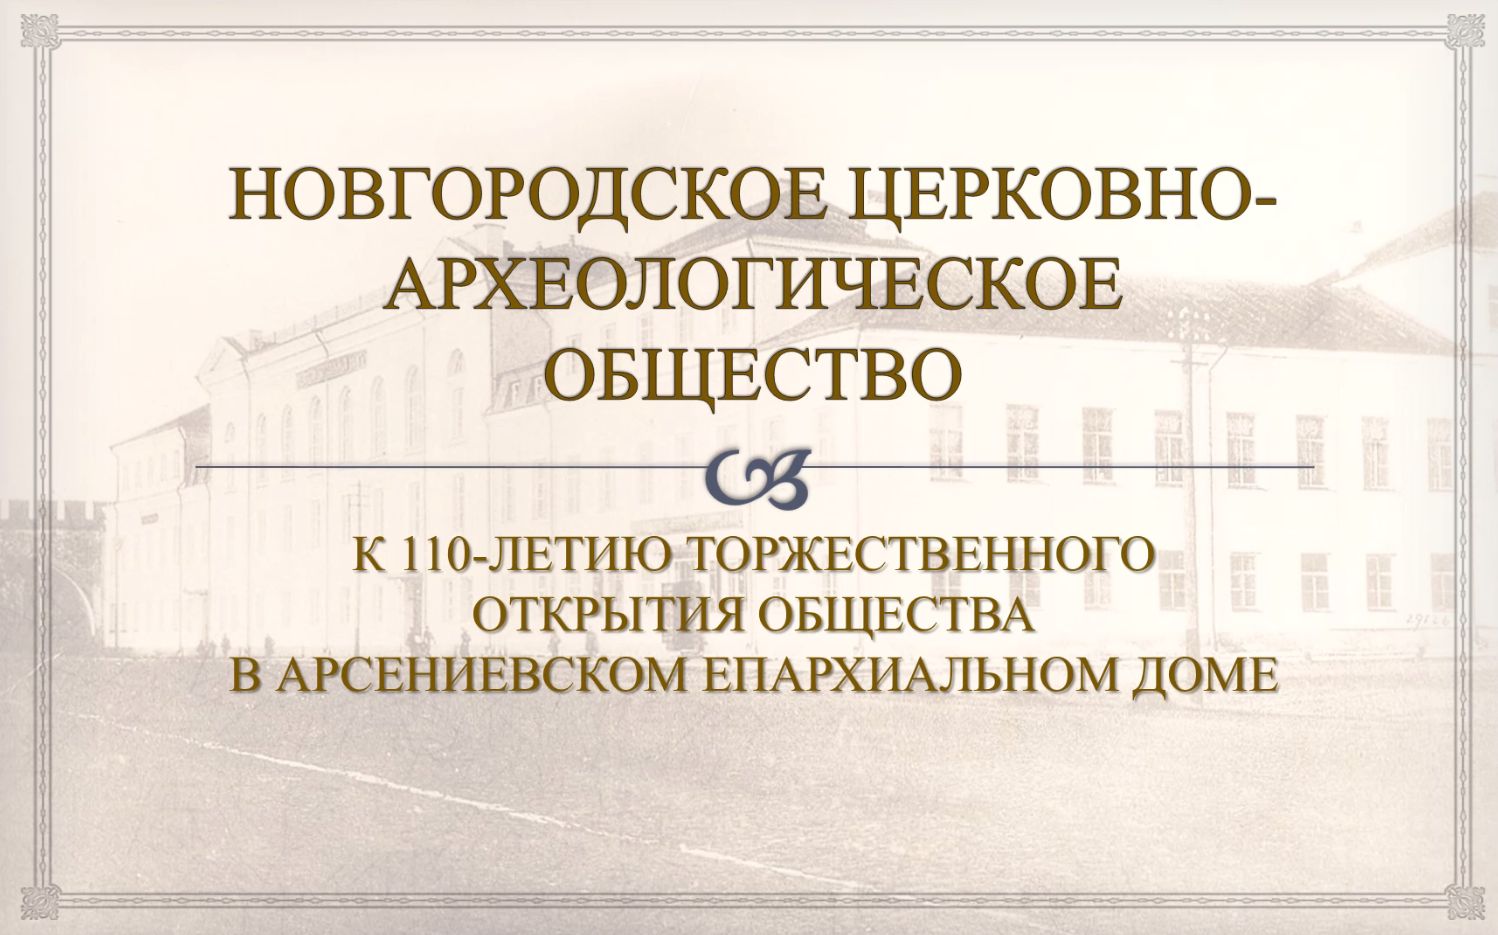 Виртуальная выставка к 110-летию Новгородского церковно-археологического общества